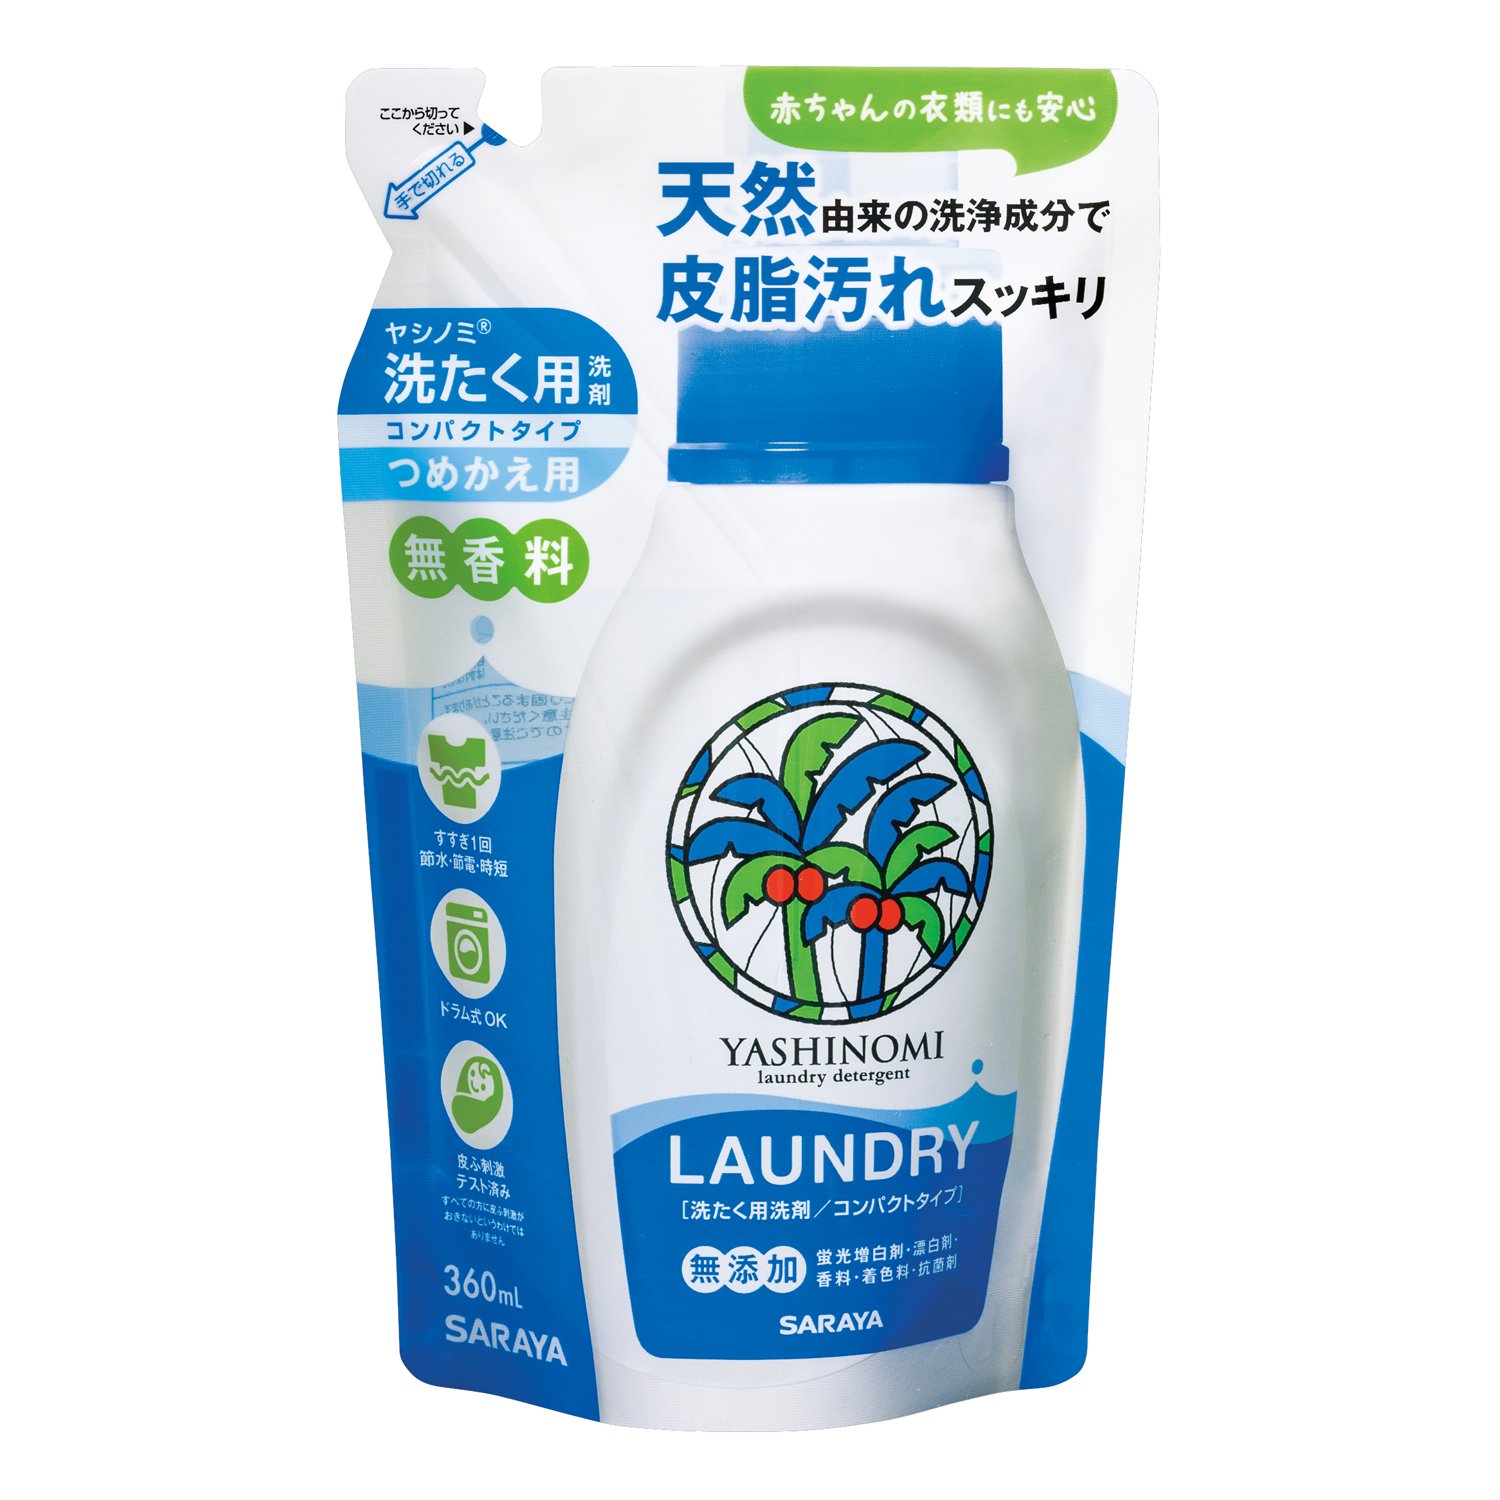 サラヤ ヤシノミ洗たく用洗剤 コンパクトタイプ つめかえ用 360mL